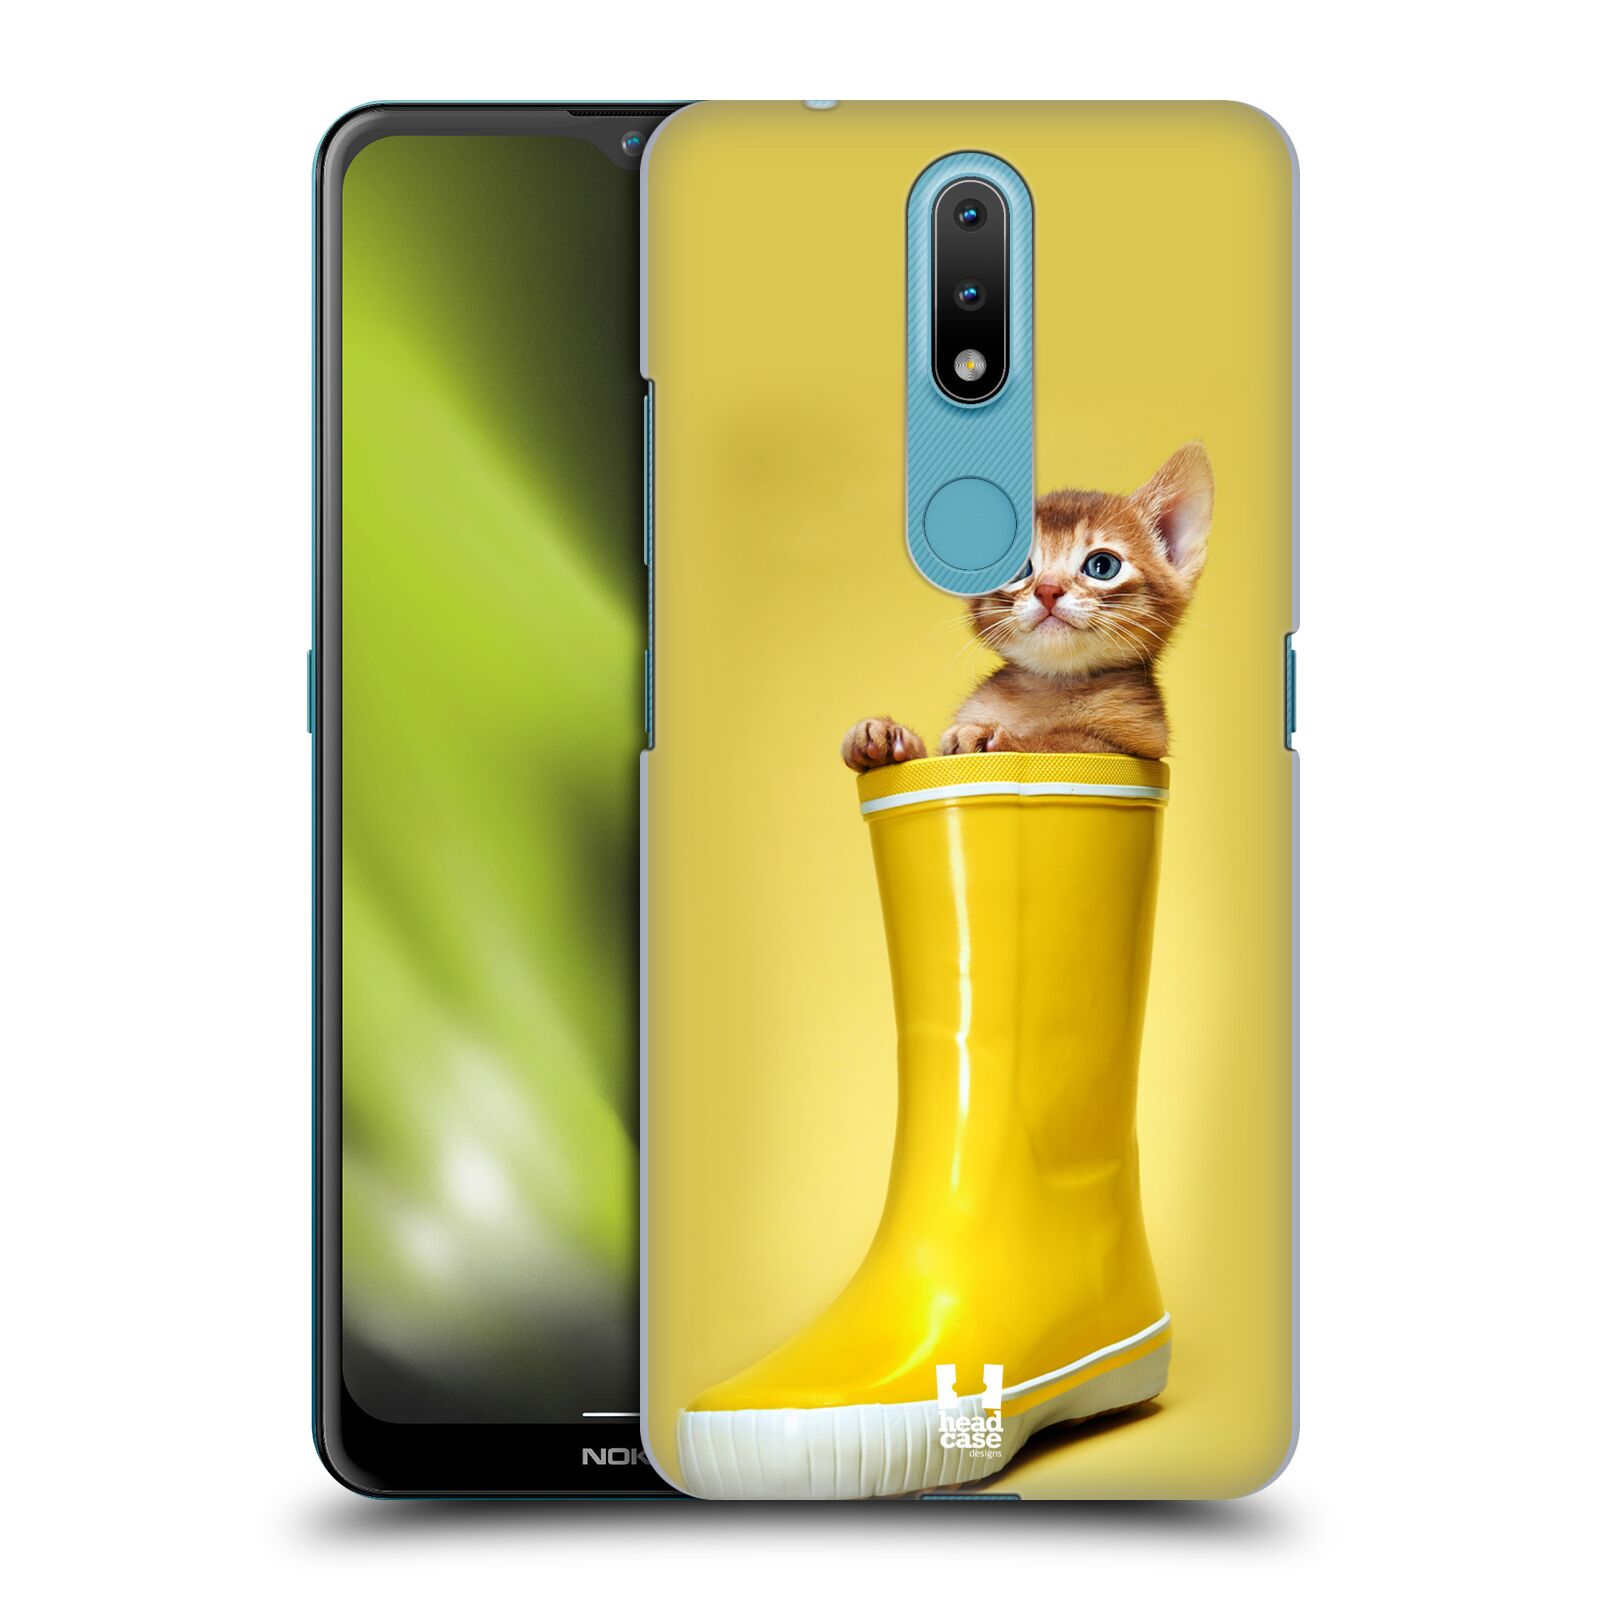 Plastový obal HEAD CASE na mobil Nokia 2.4 vzor Legrační zvířátka kotě v botě žlutá